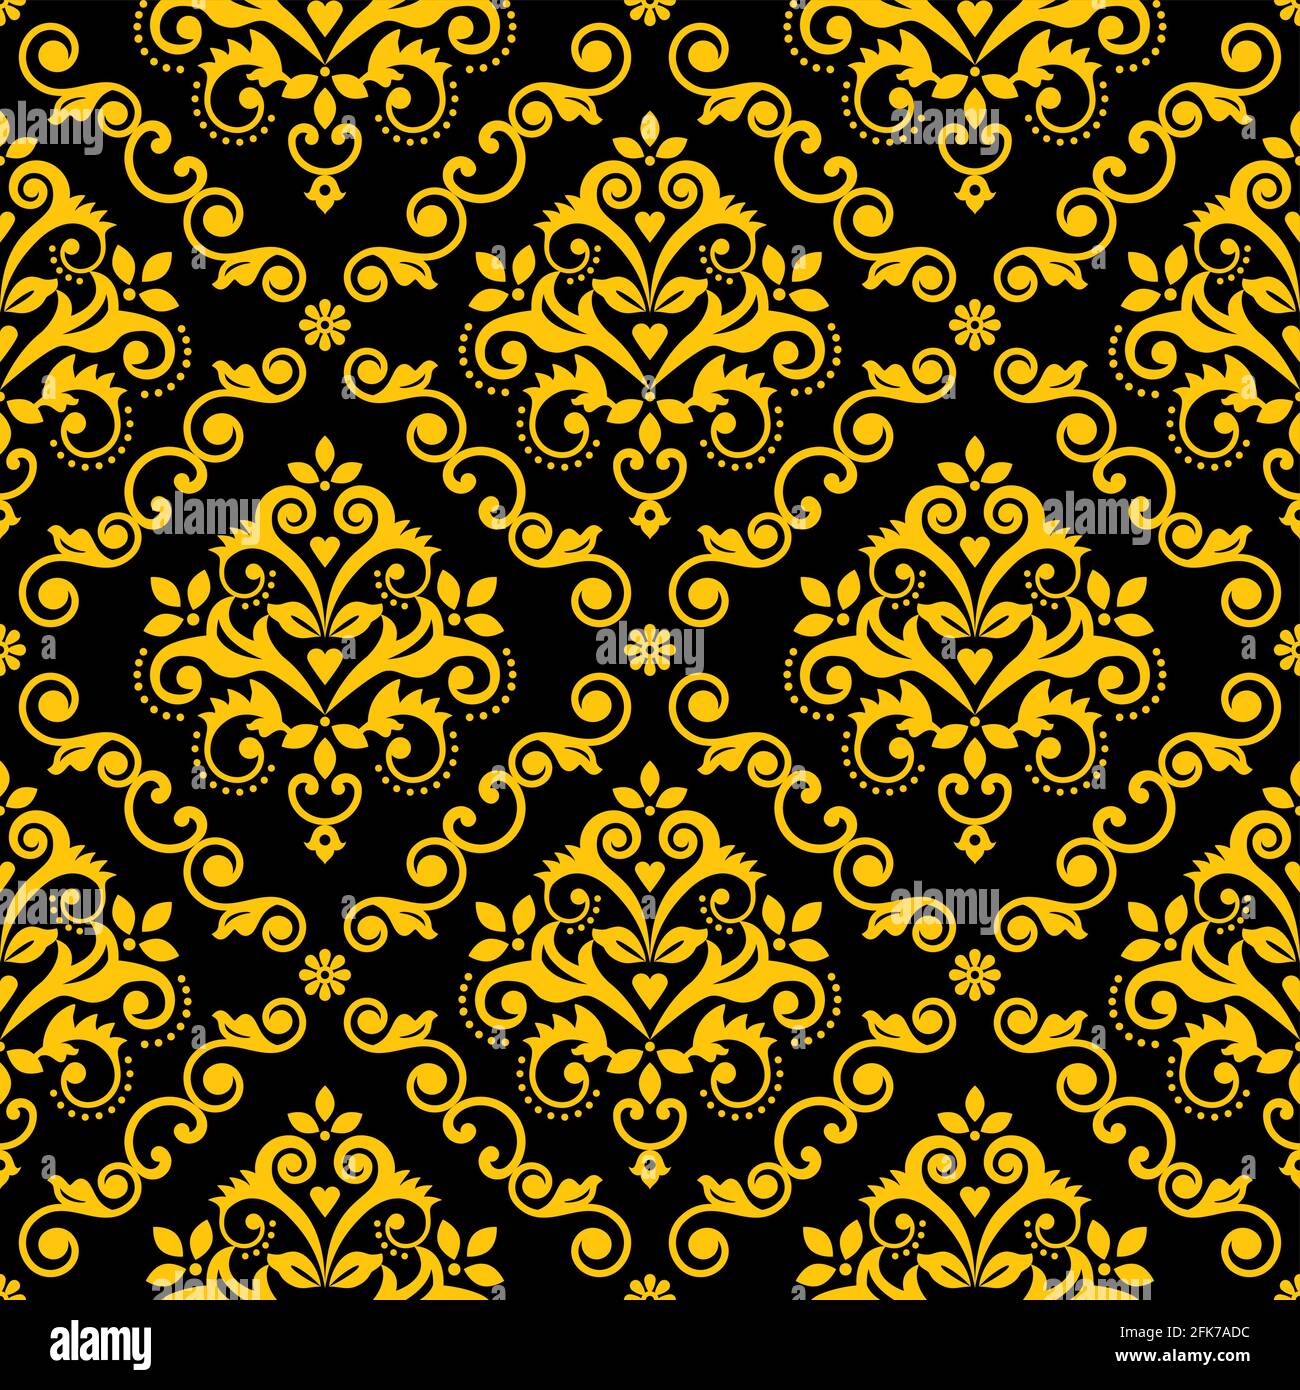 Klassische Damask Tapete oder Stoffmuster, königselegantes Textil Vektor nahtloses Design mit Blumen, Blättern und Wirbeln in Gold auf Schwarz Stock Vektor